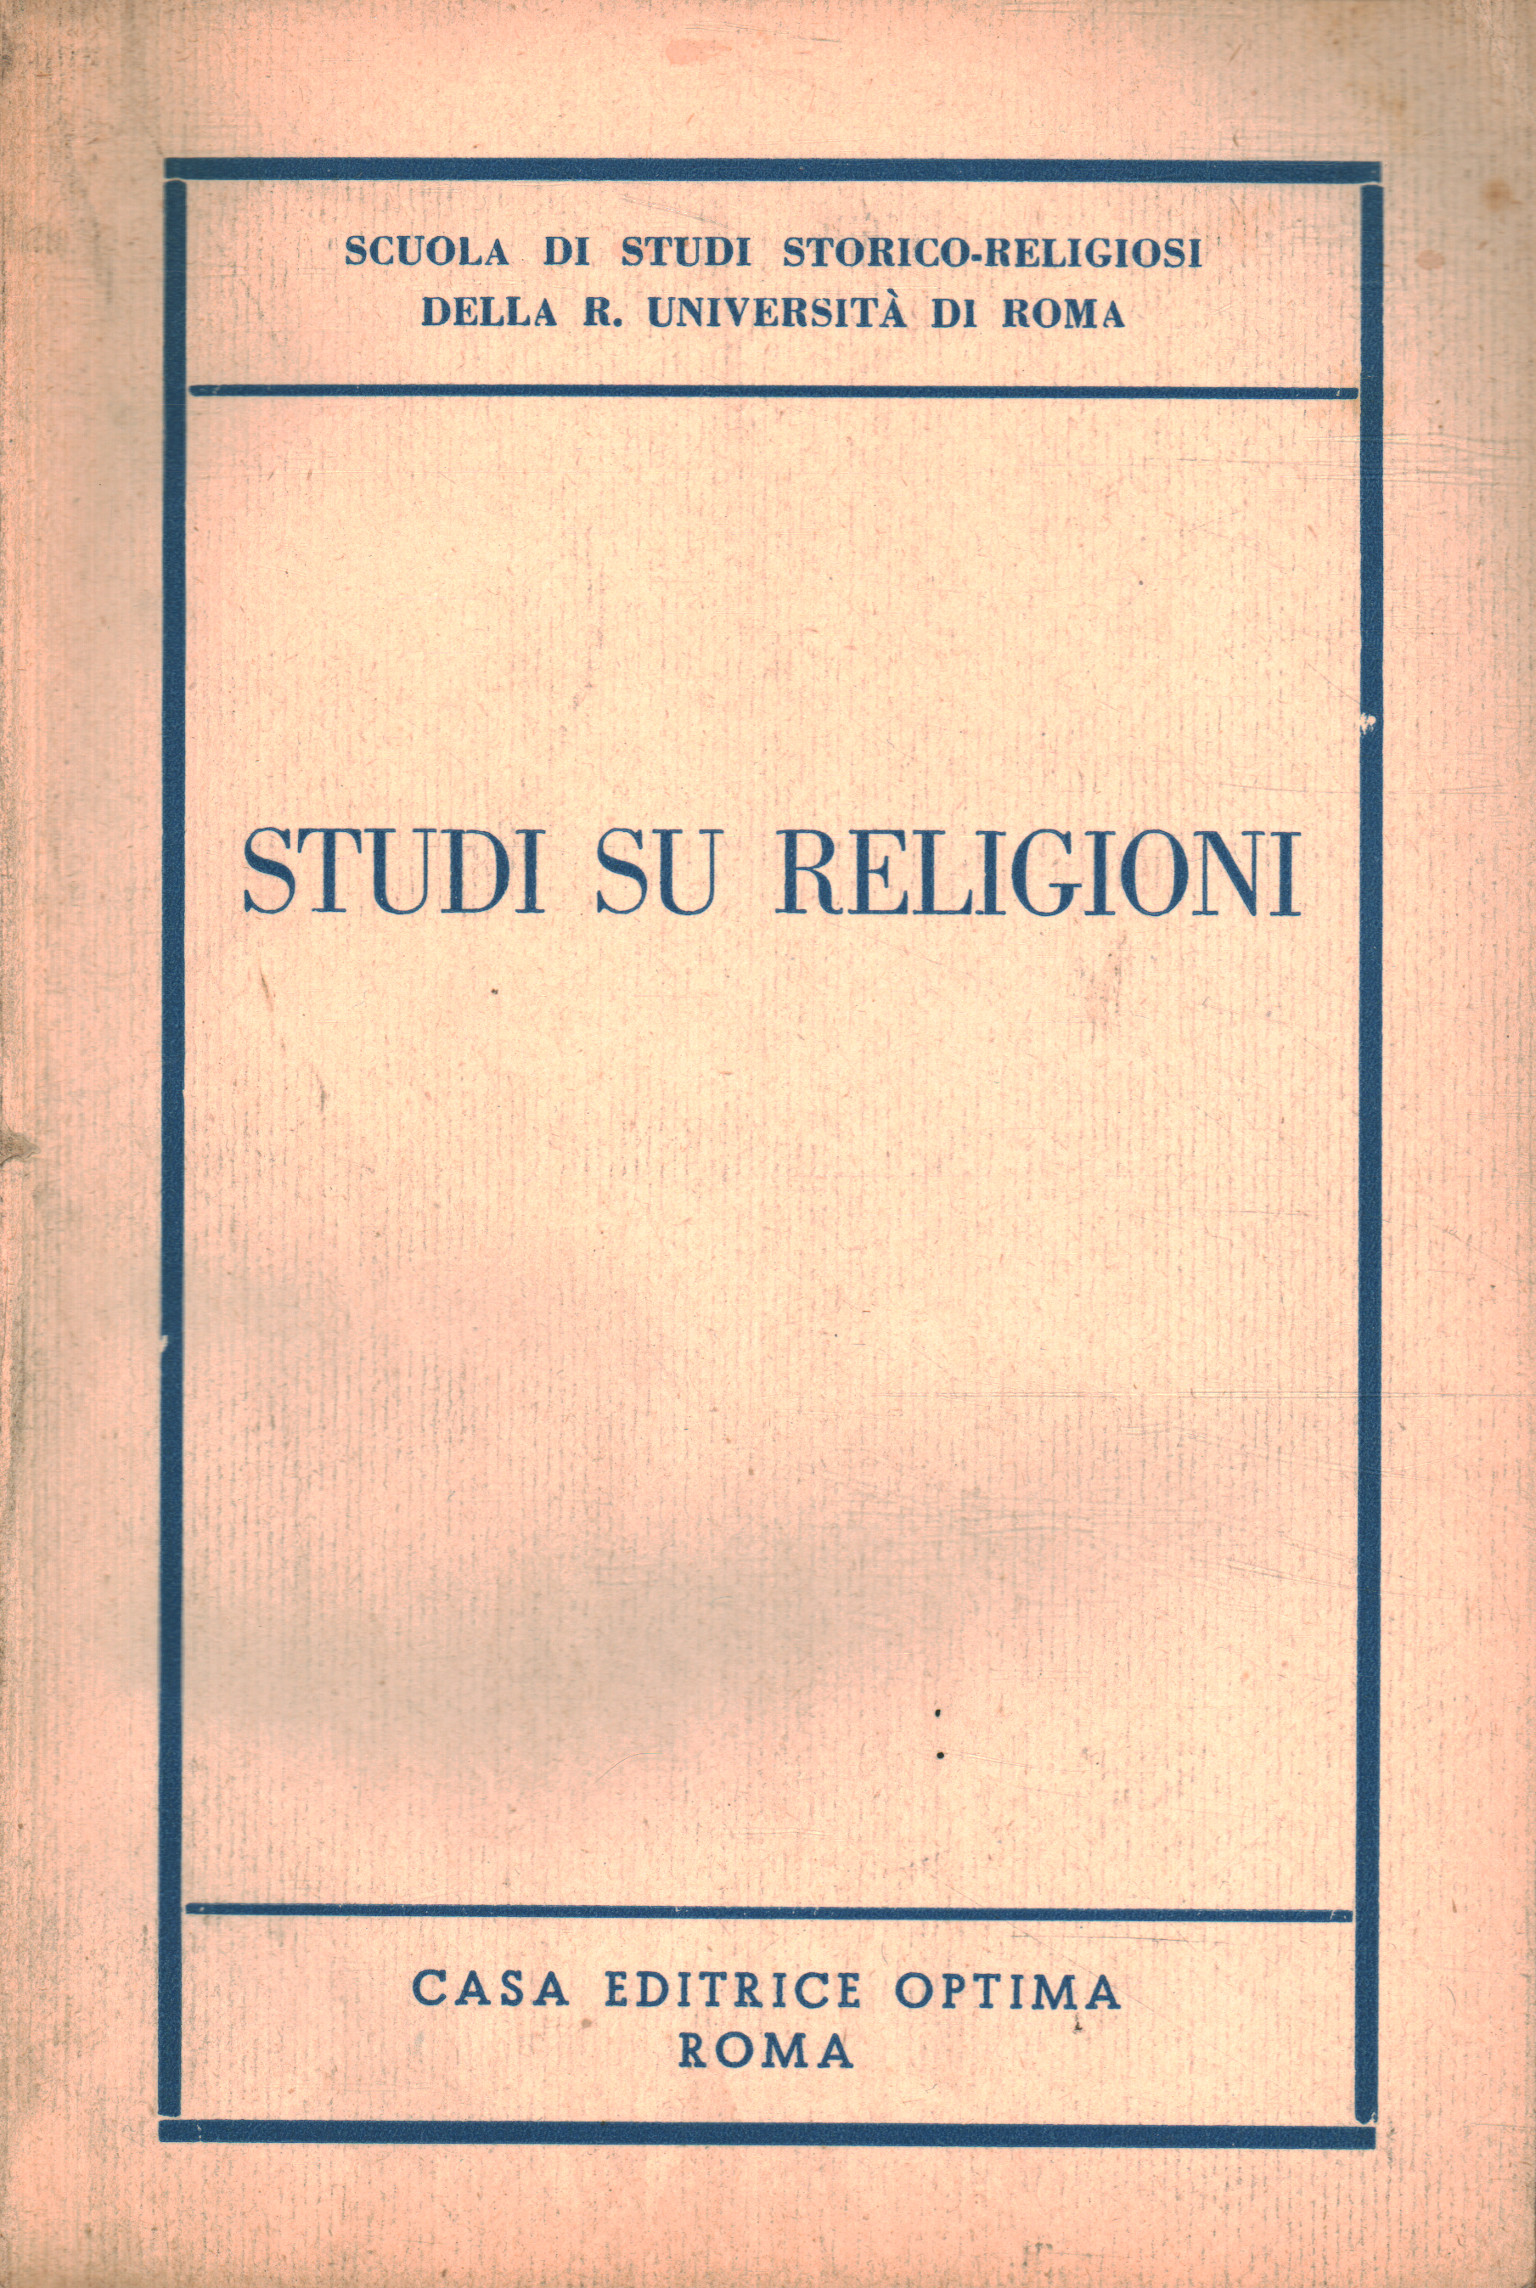 Studien zu Religionen